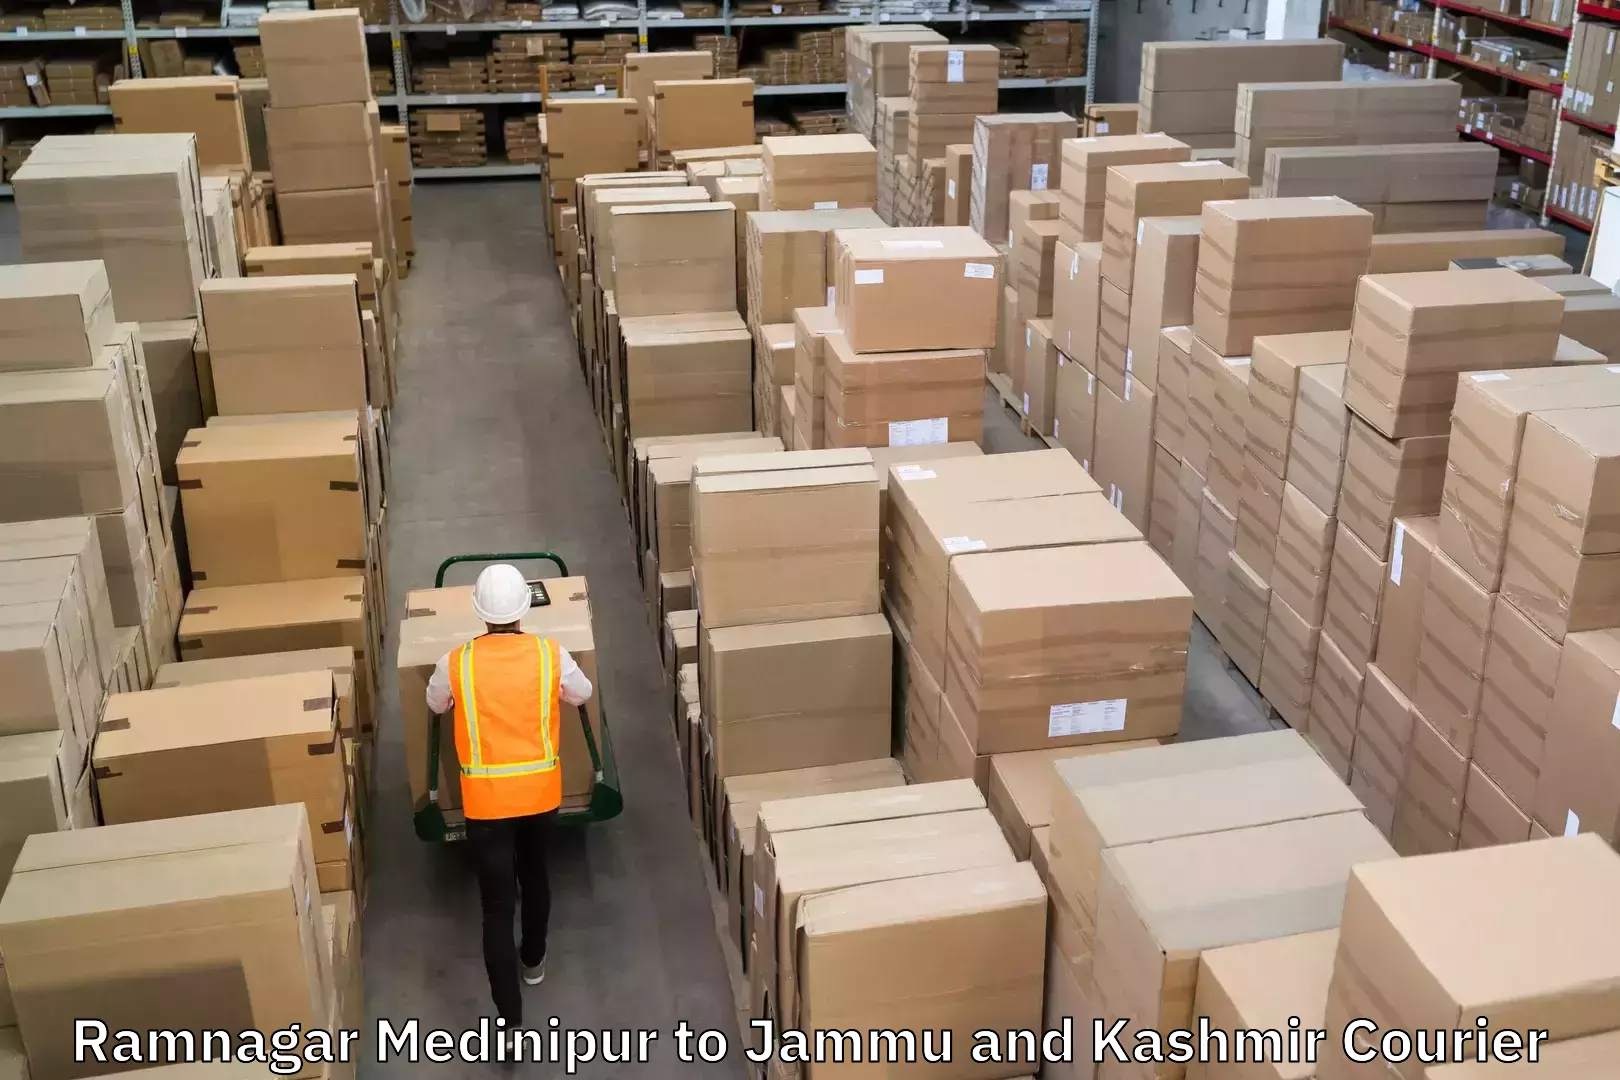 Customer-centric shipping in Ramnagar Medinipur to Jammu and Kashmir